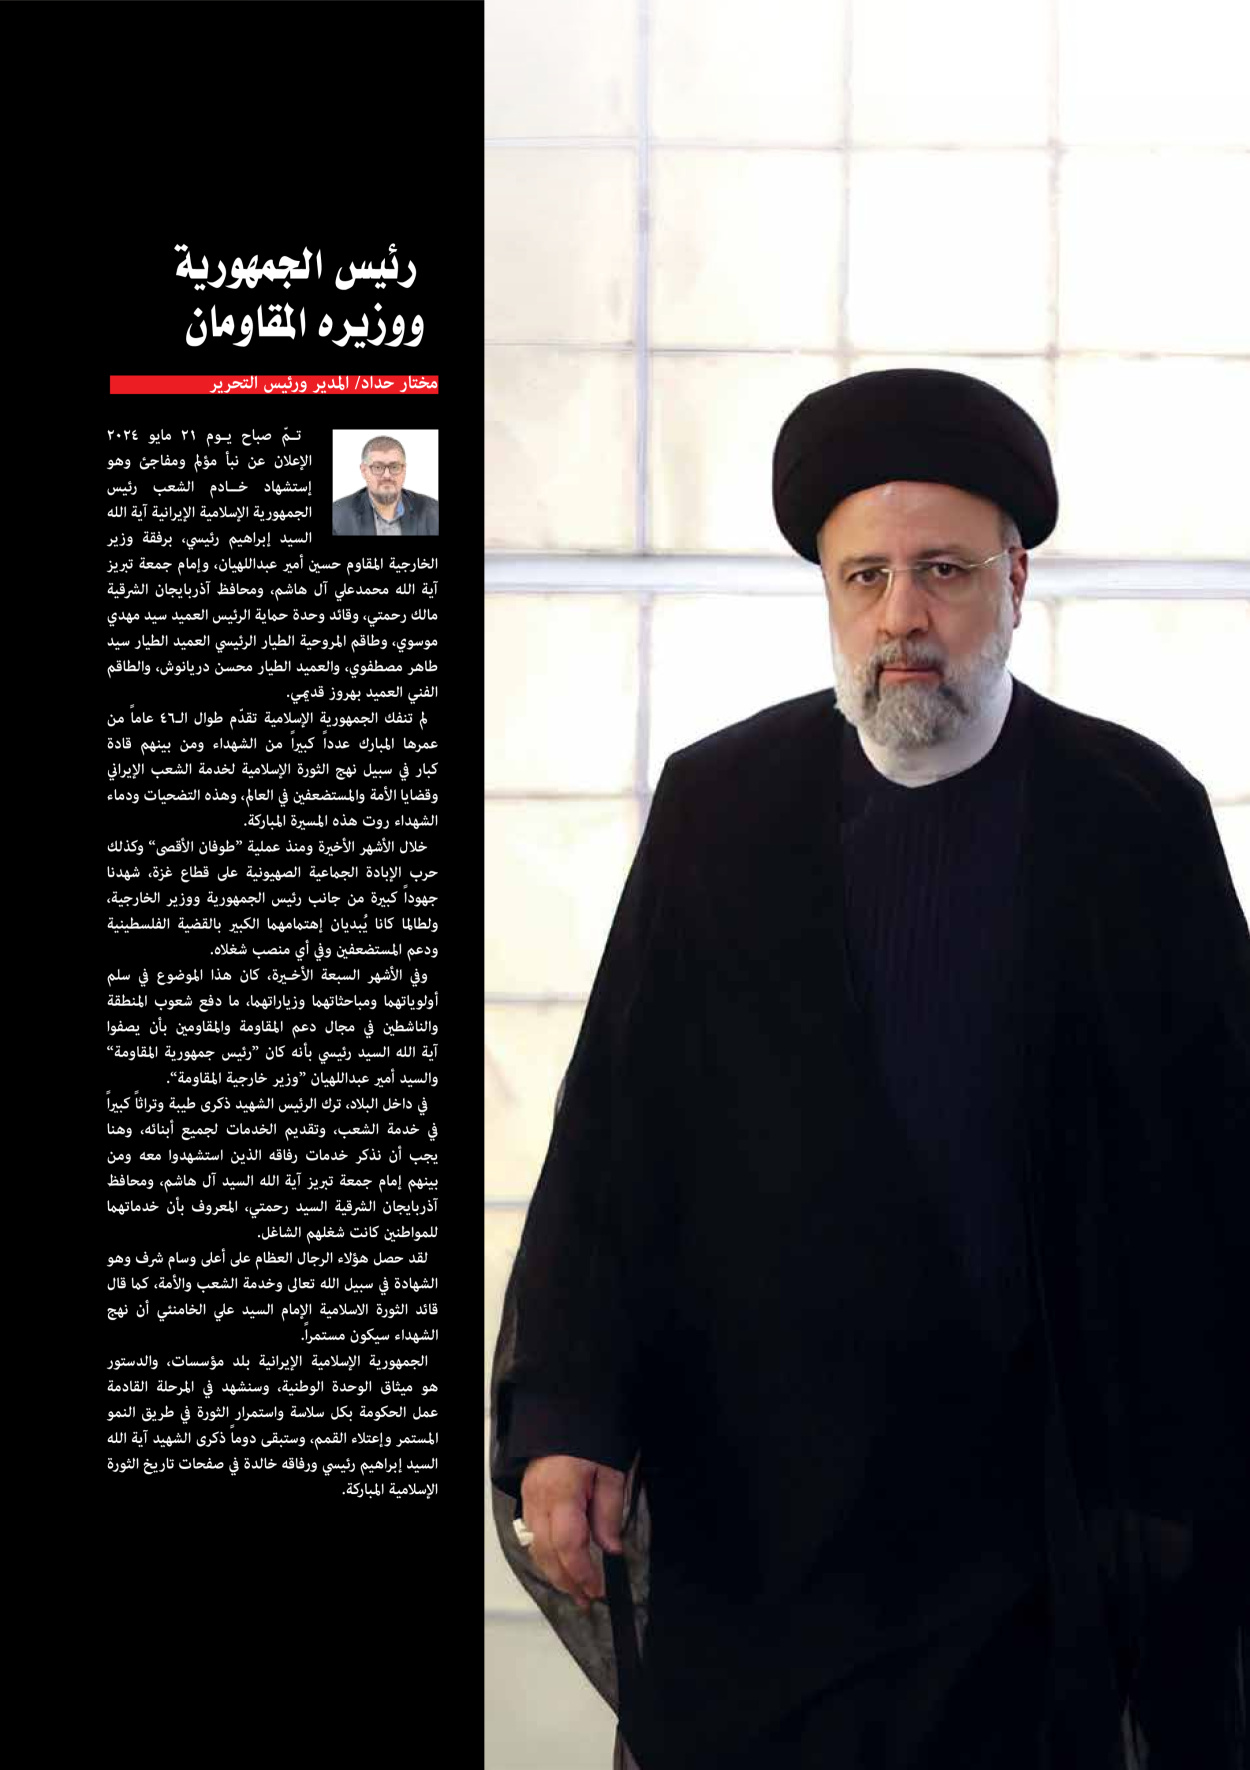 صحیفة ایران الدولیة الوفاق - ملحق ویژه نامه چهلم شهید رییسی - ٢٩ يونيو ٢٠٢٤ - الصفحة ٥